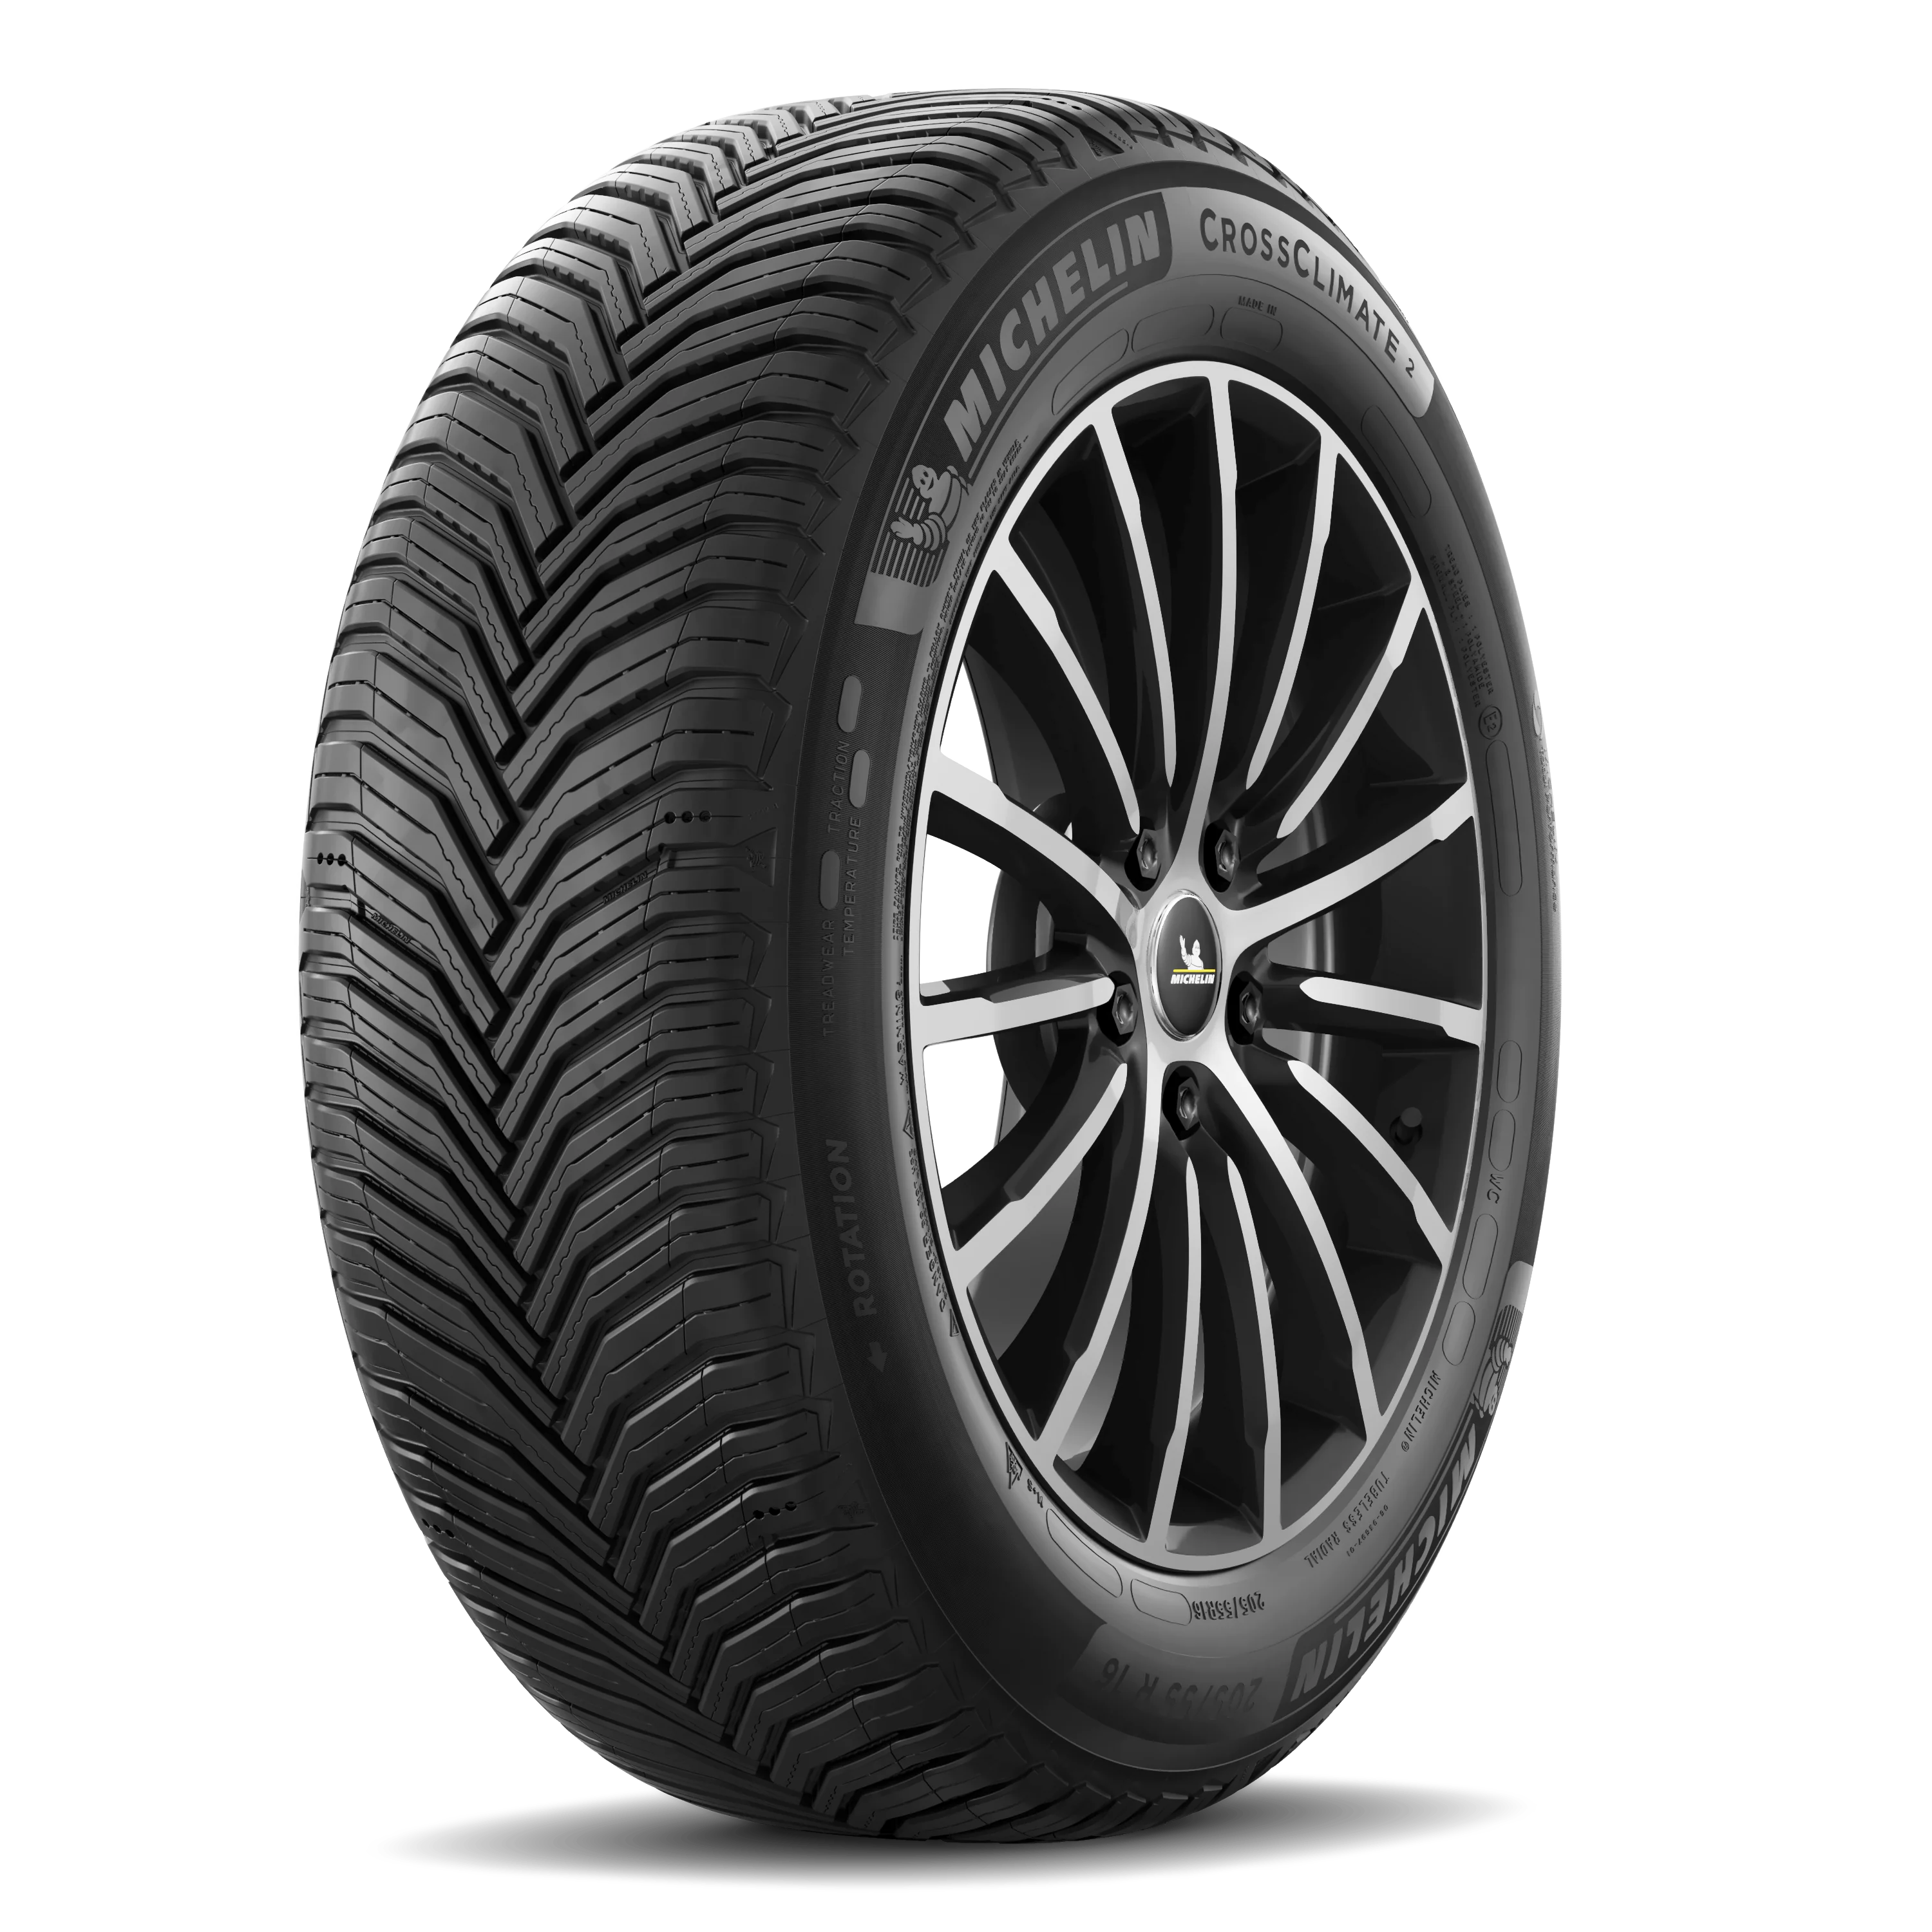 Michelin Michelin 225/55 R18 102V CROSSCLIMATE 2 pneumatici nuovi All Season 